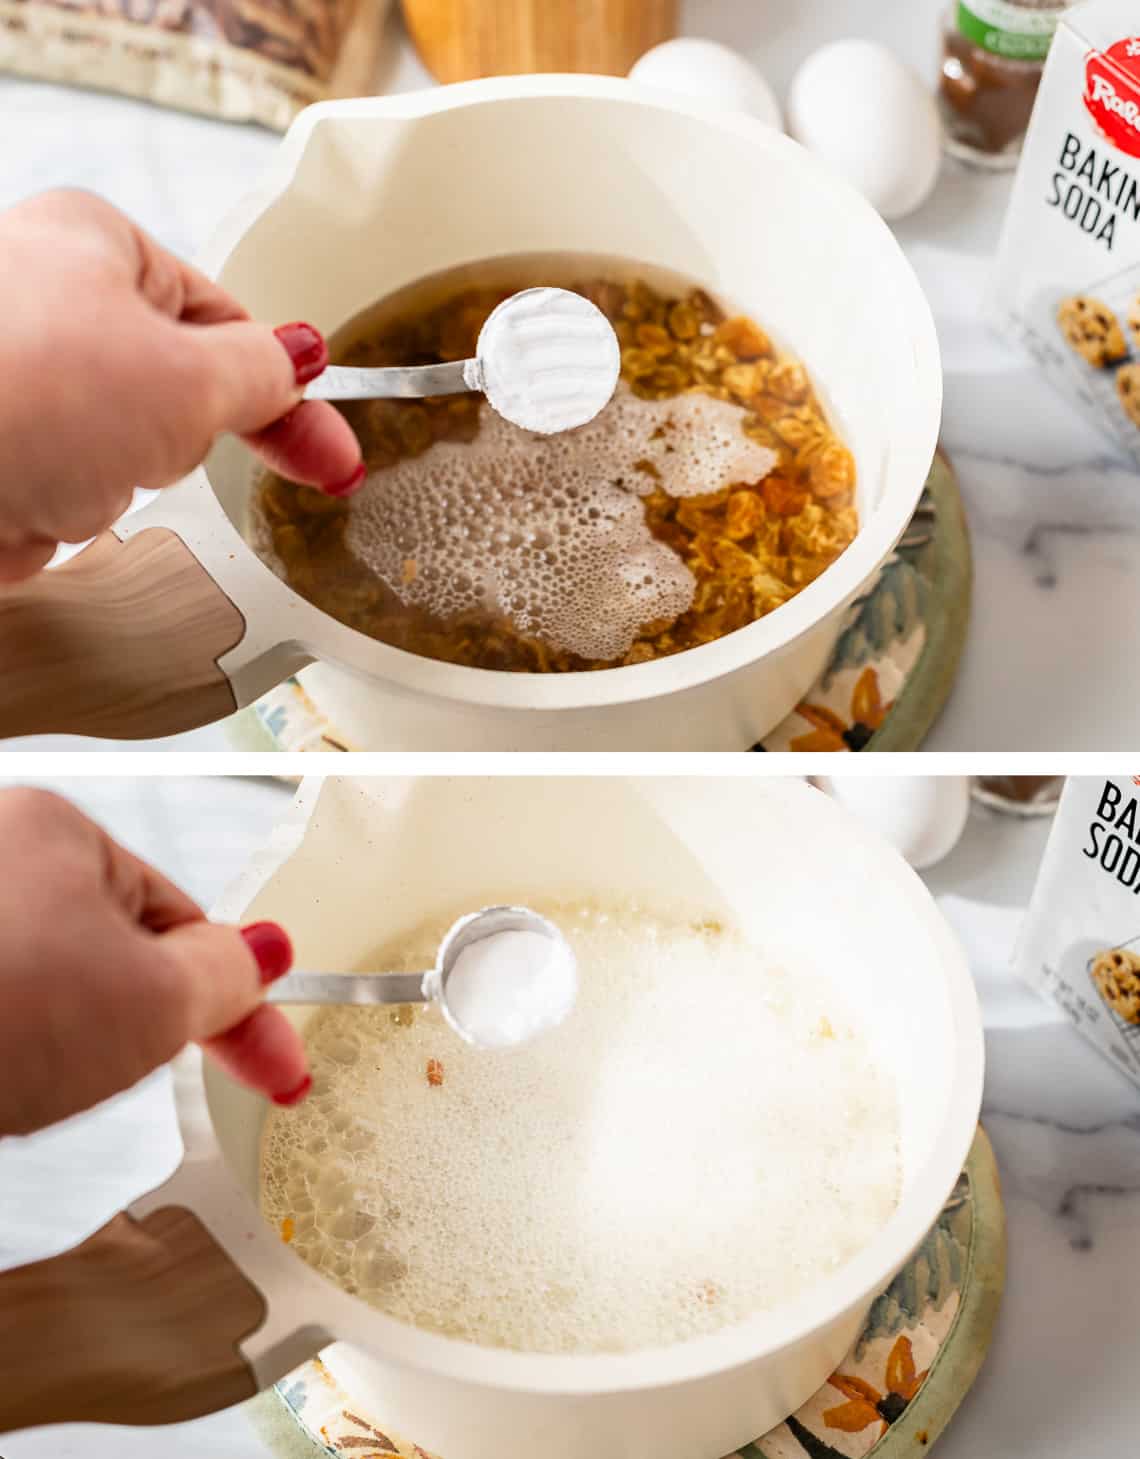 top baking soda in a measuring spoon bottom fizz in raisin bowl from added baking soda.